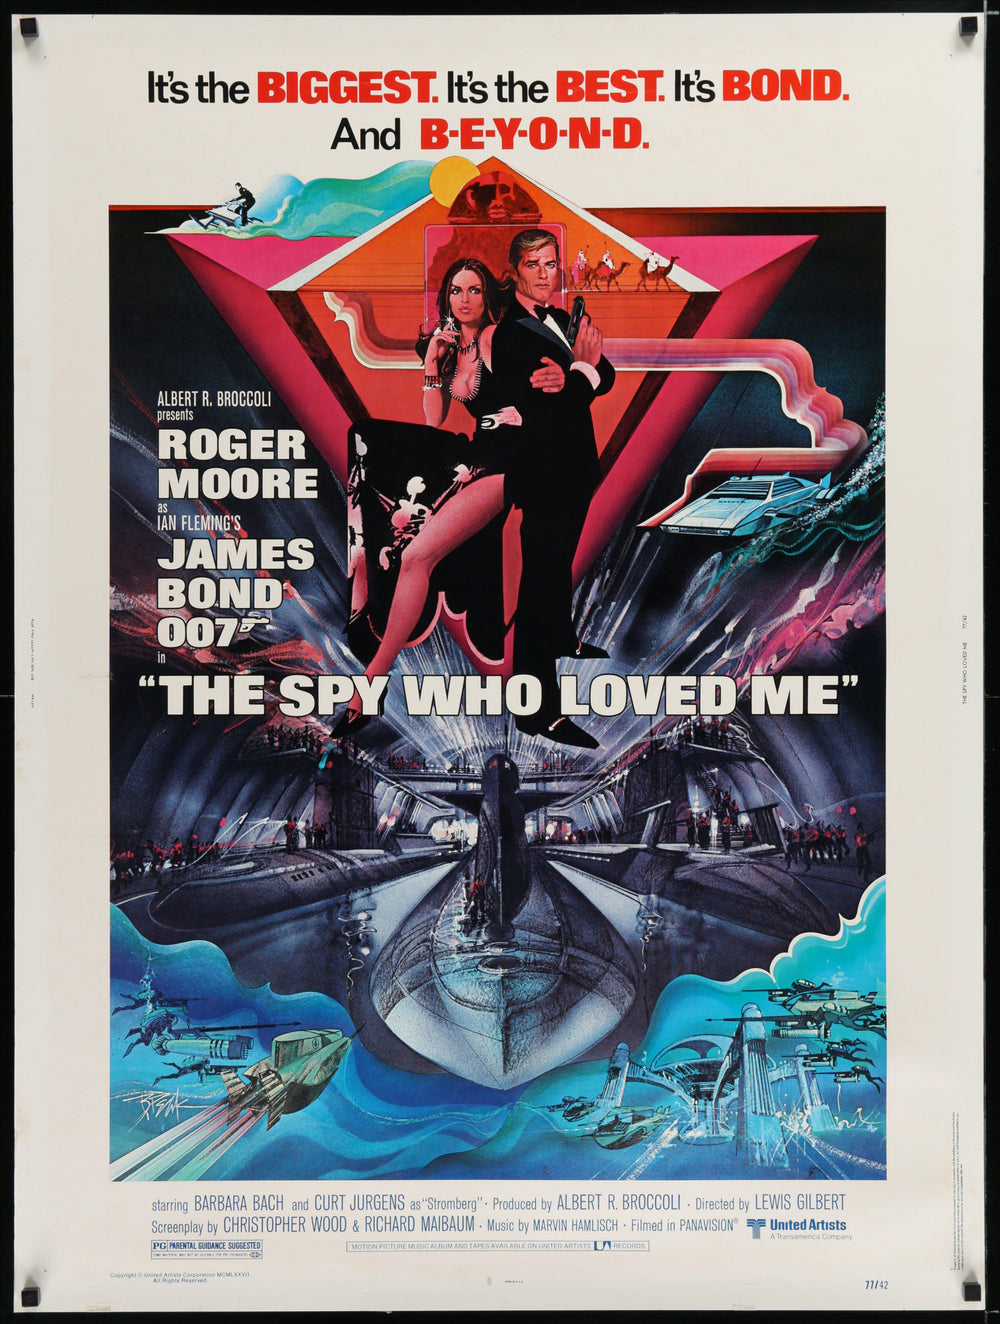 the-spy-who-loved-me-vintage-movie-poster-original-30x40_1000x.jpg?v=1663221064